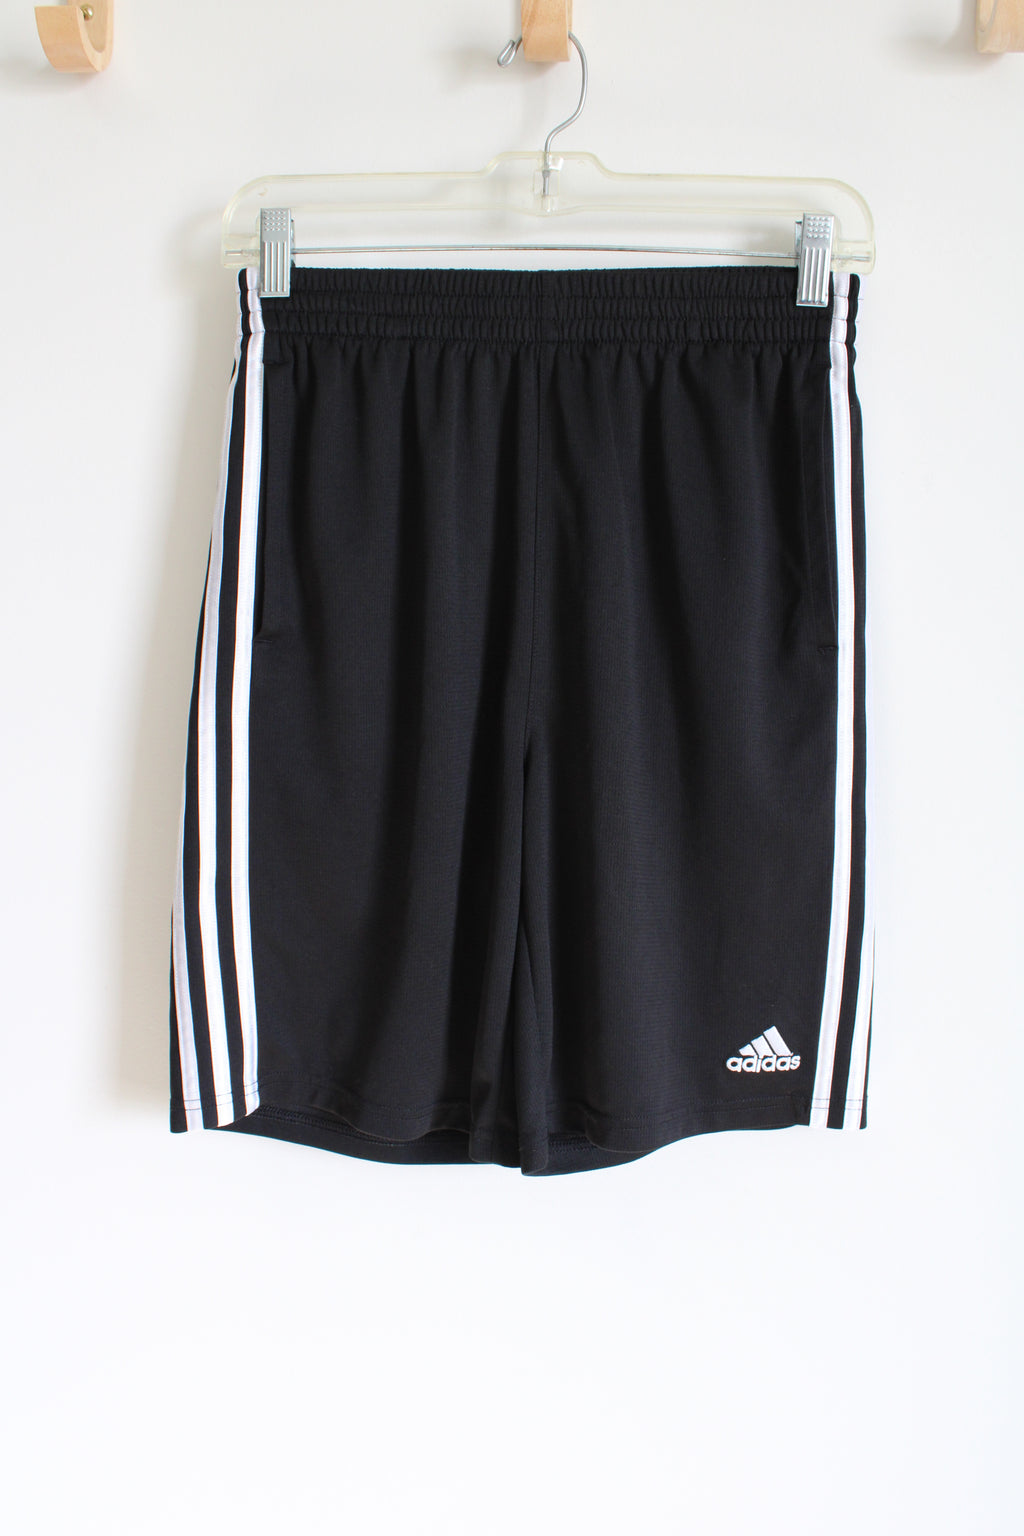 Adidas Black Athletic Shorts | 18/20